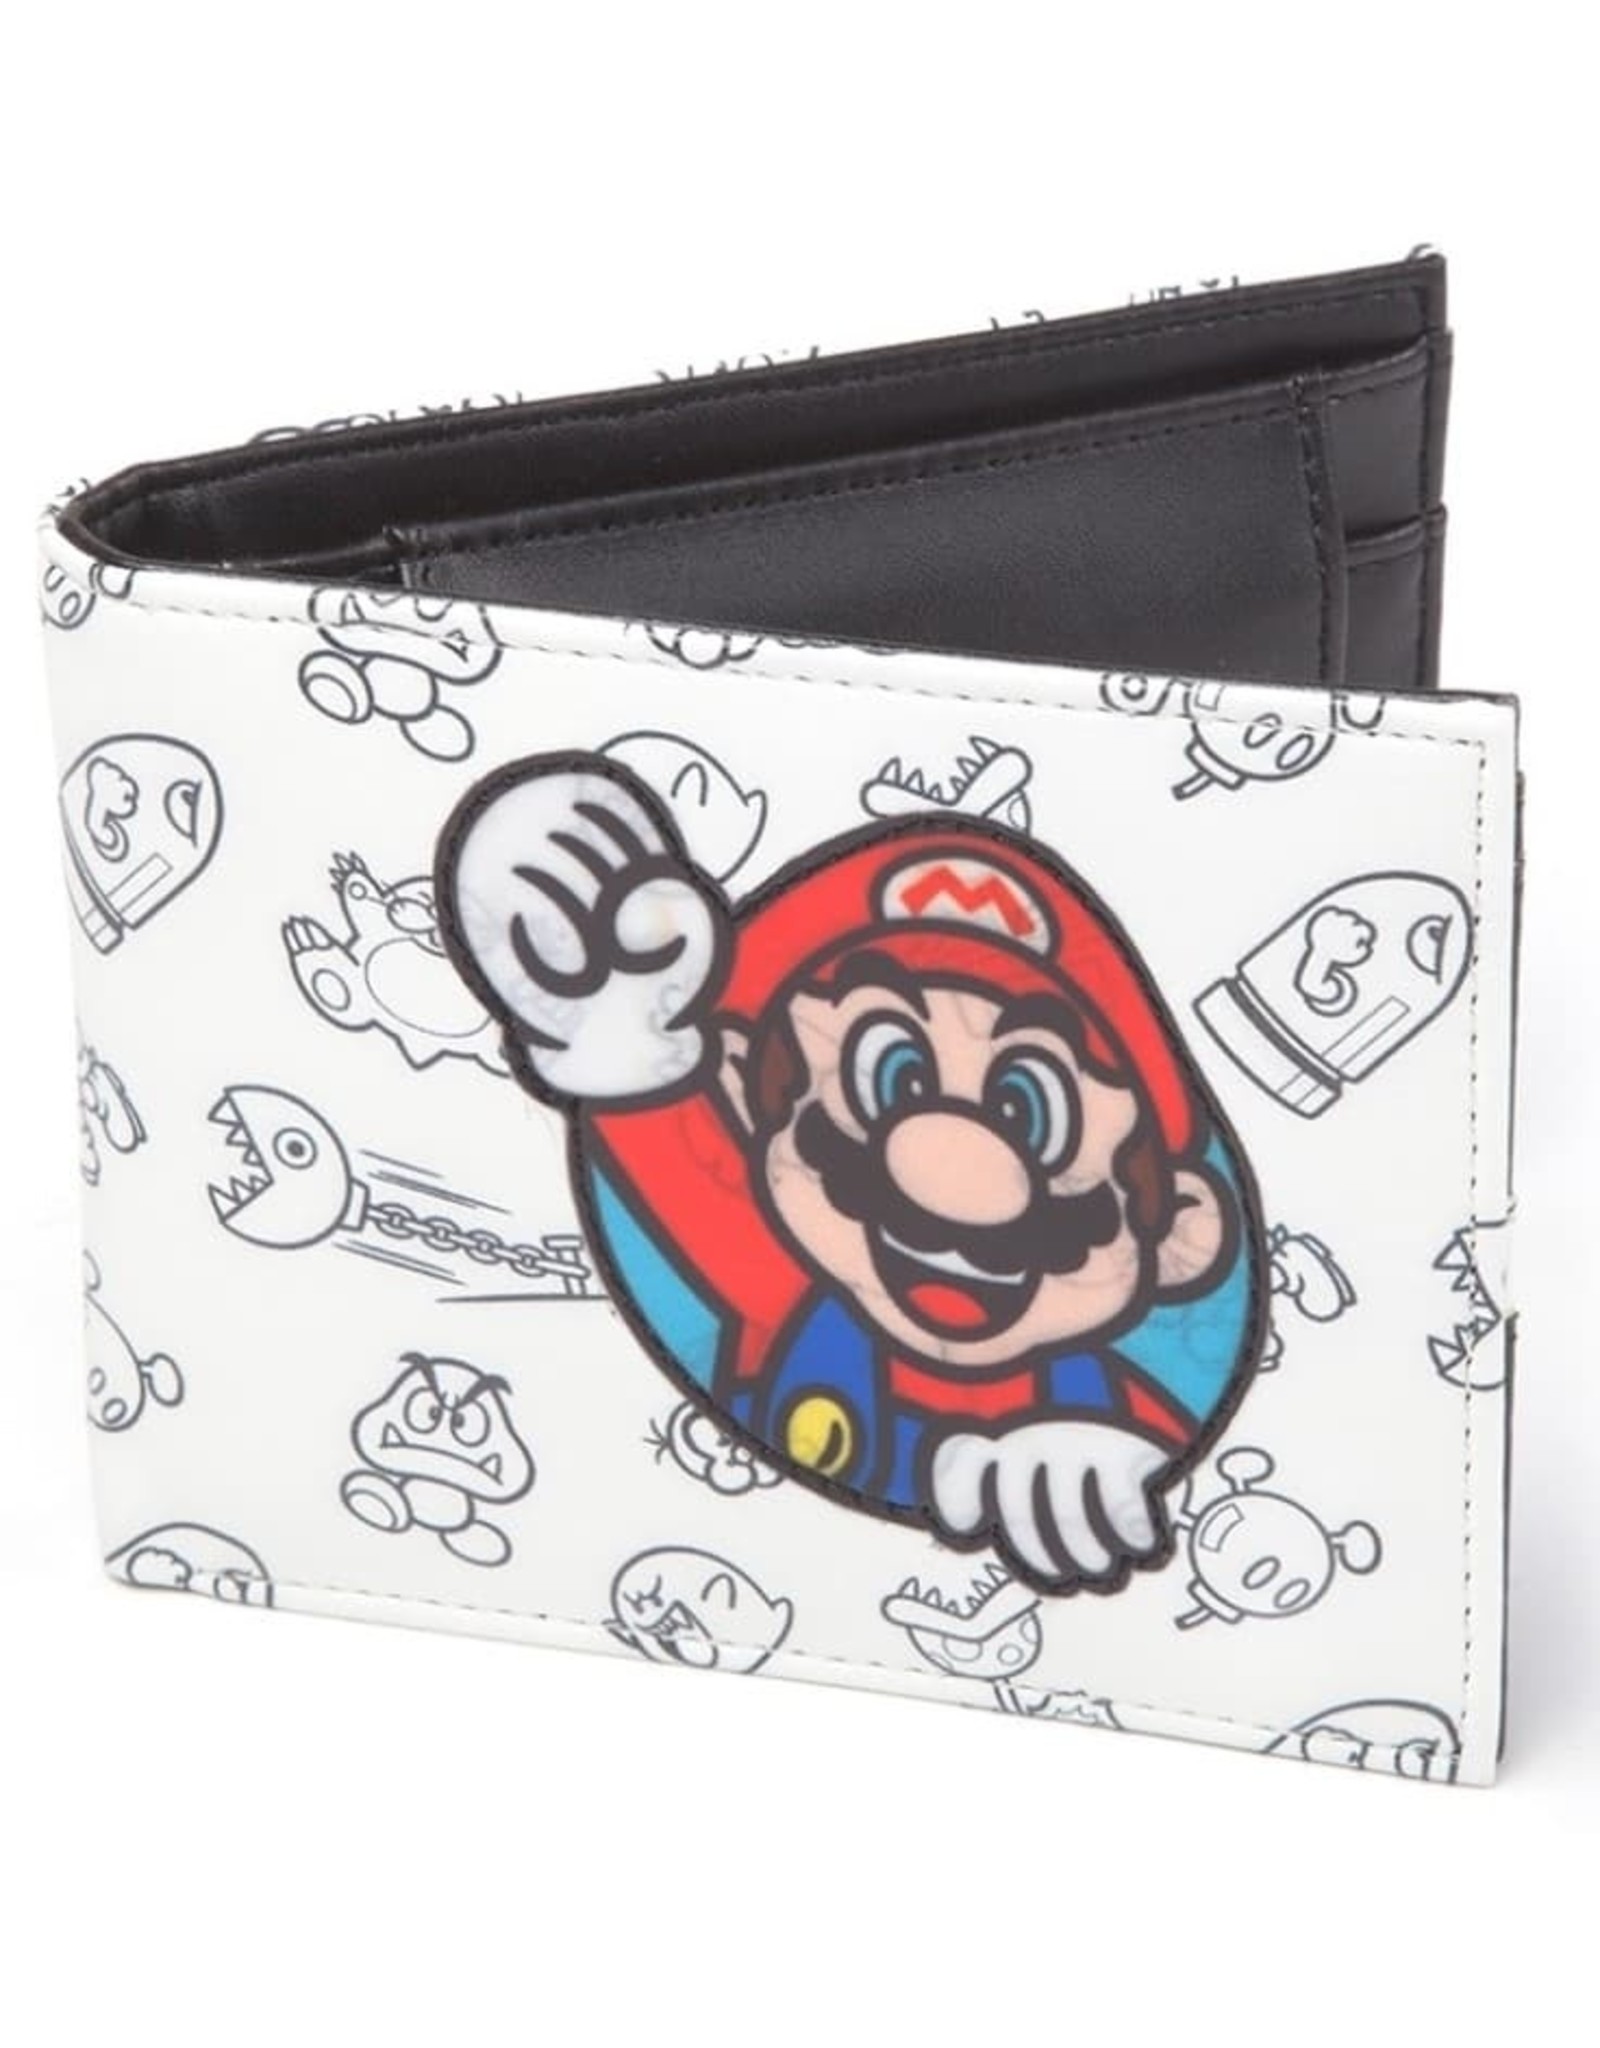 Nintendo Nintendo bags - Super Mario wallet